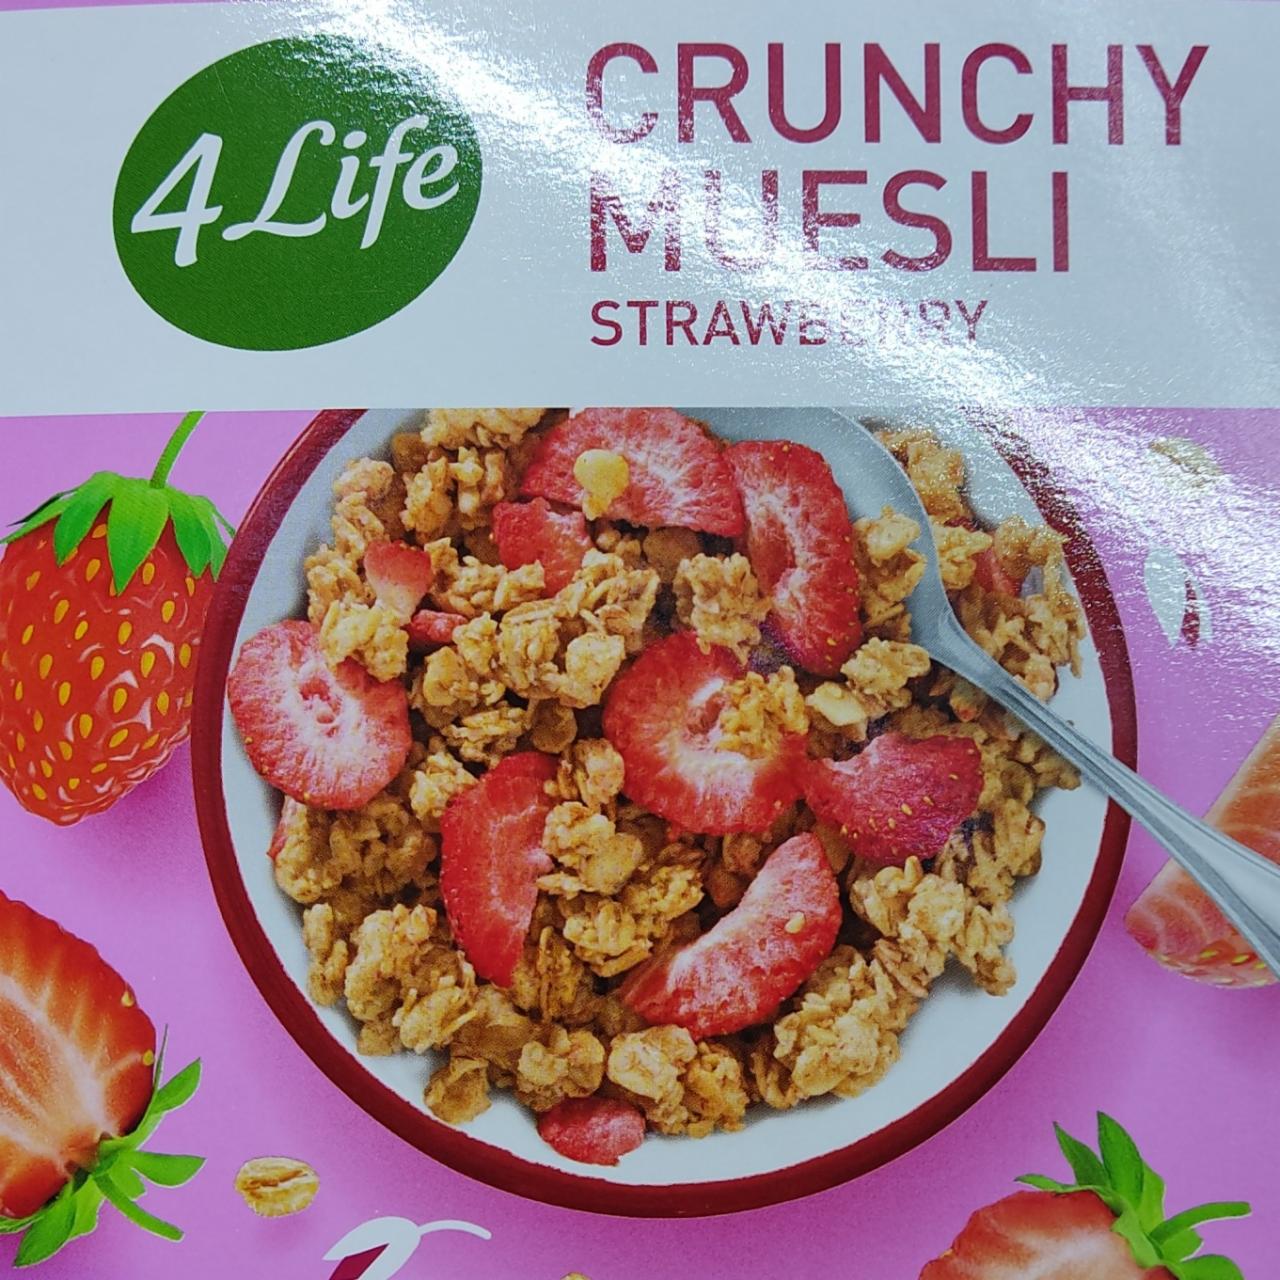 Фото - Мюслі вівсяні зі смаком полуниці Crunchy Muesli Strawberry 4Life